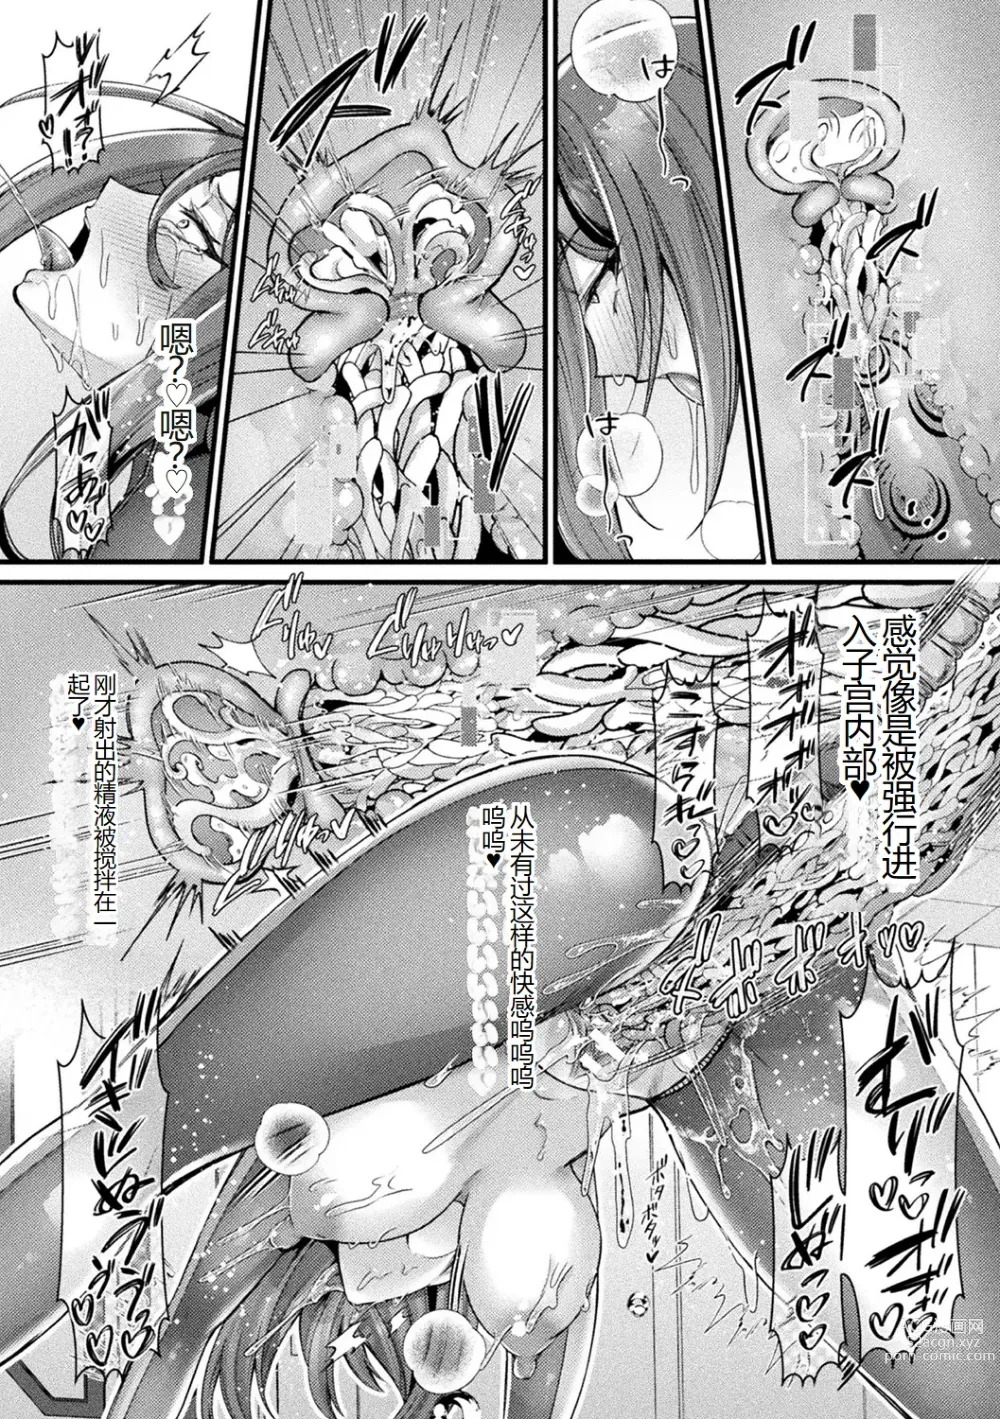 Page 13 of manga Bessatsu Comic Unreal AI ni Wakaraserareru Jinrui Hen Vol. 1